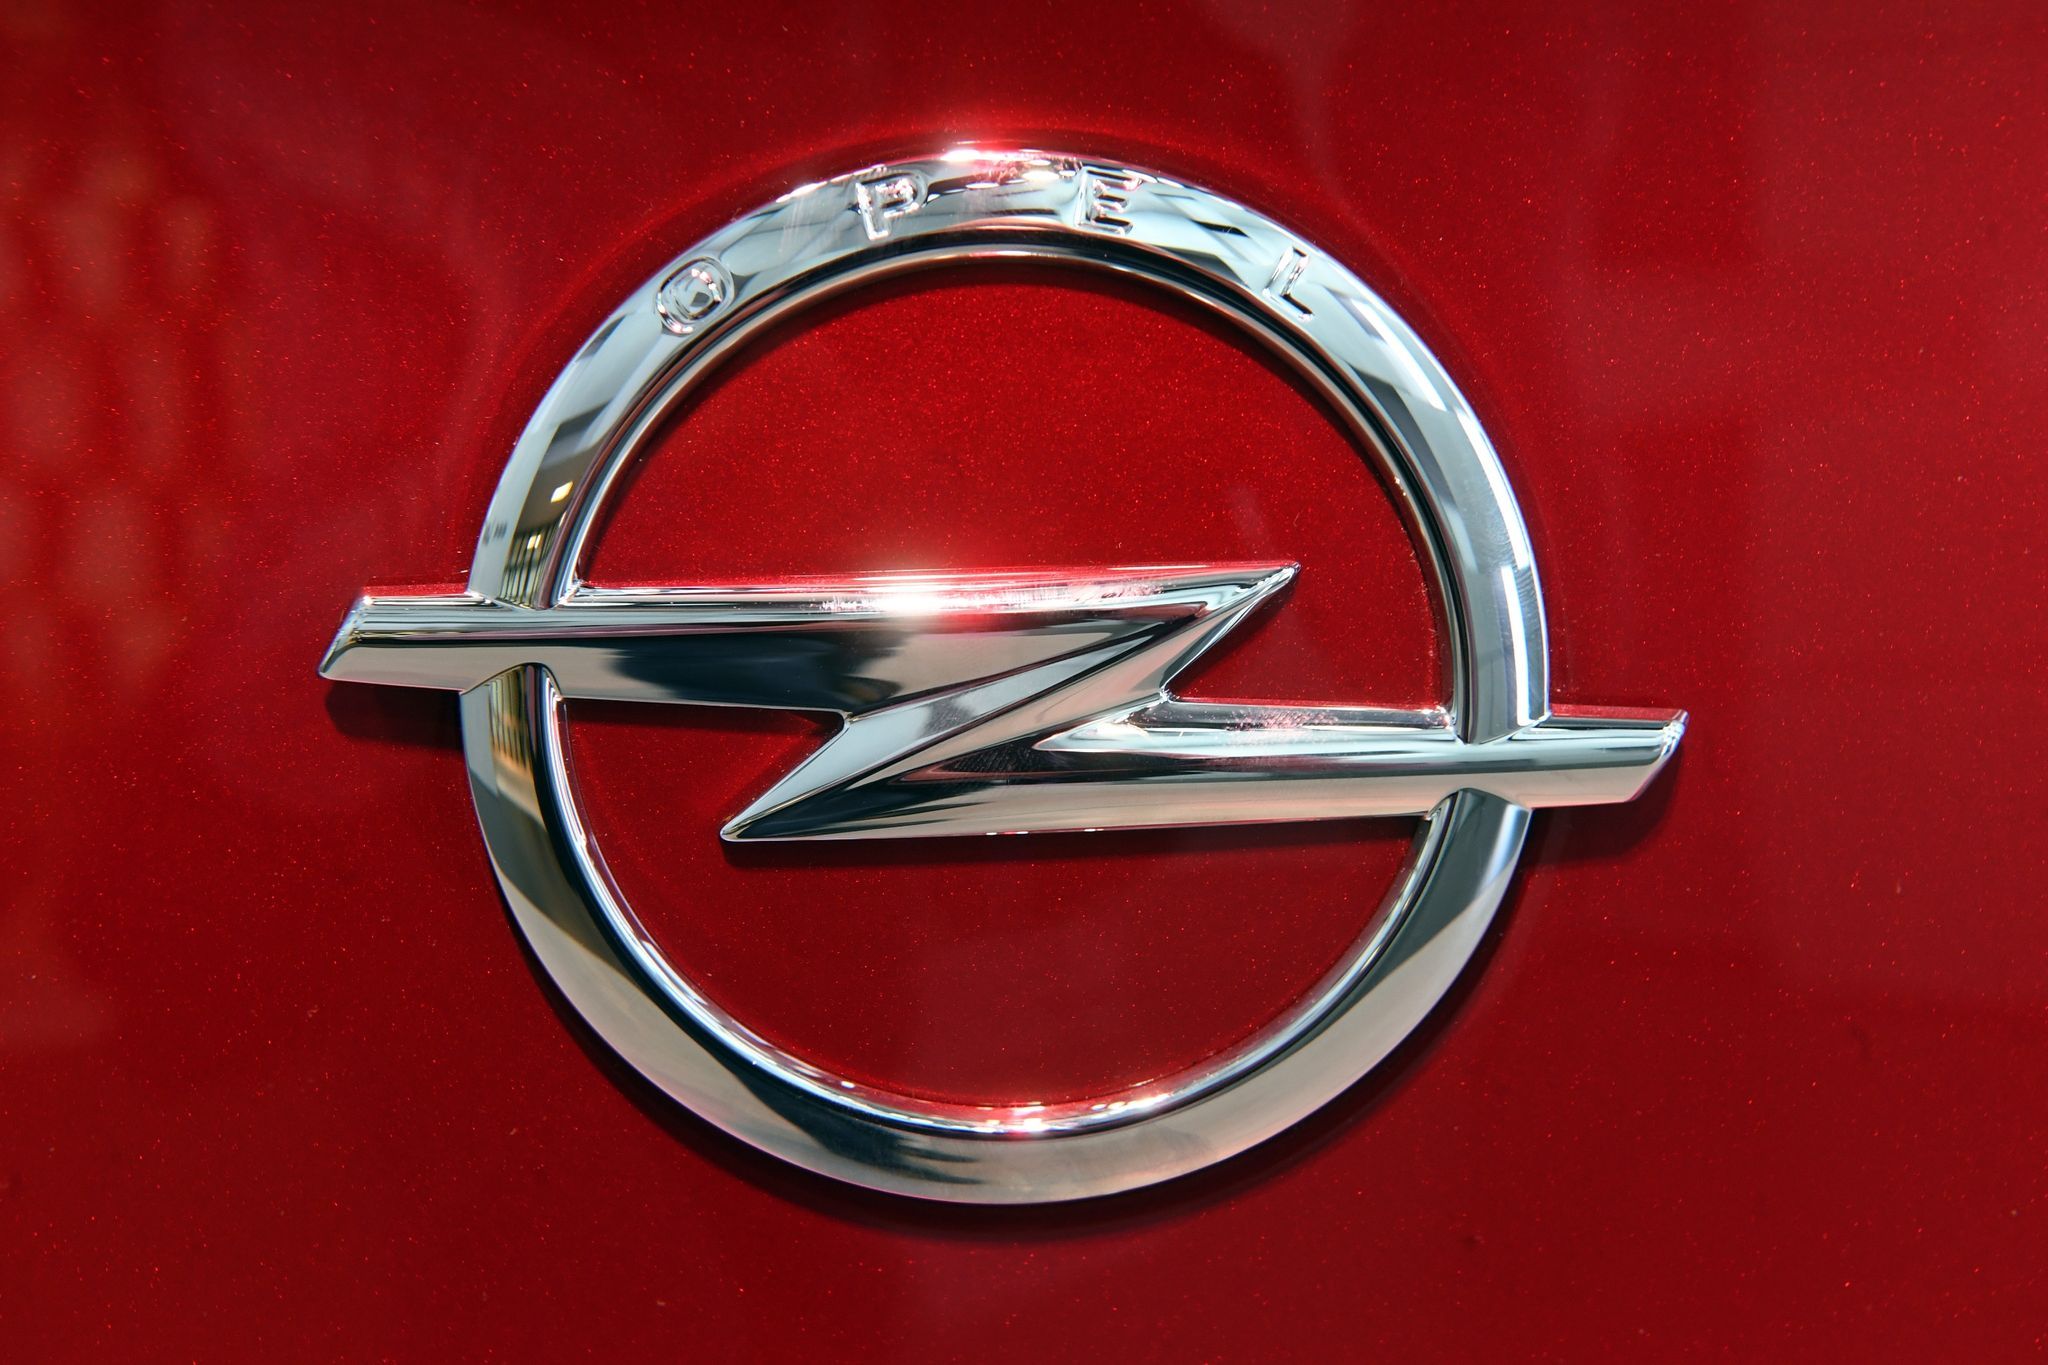 Der Autobauer Opel ruft weltweit rund 200.000 Corsa zurück. Foto: dpa/Deck